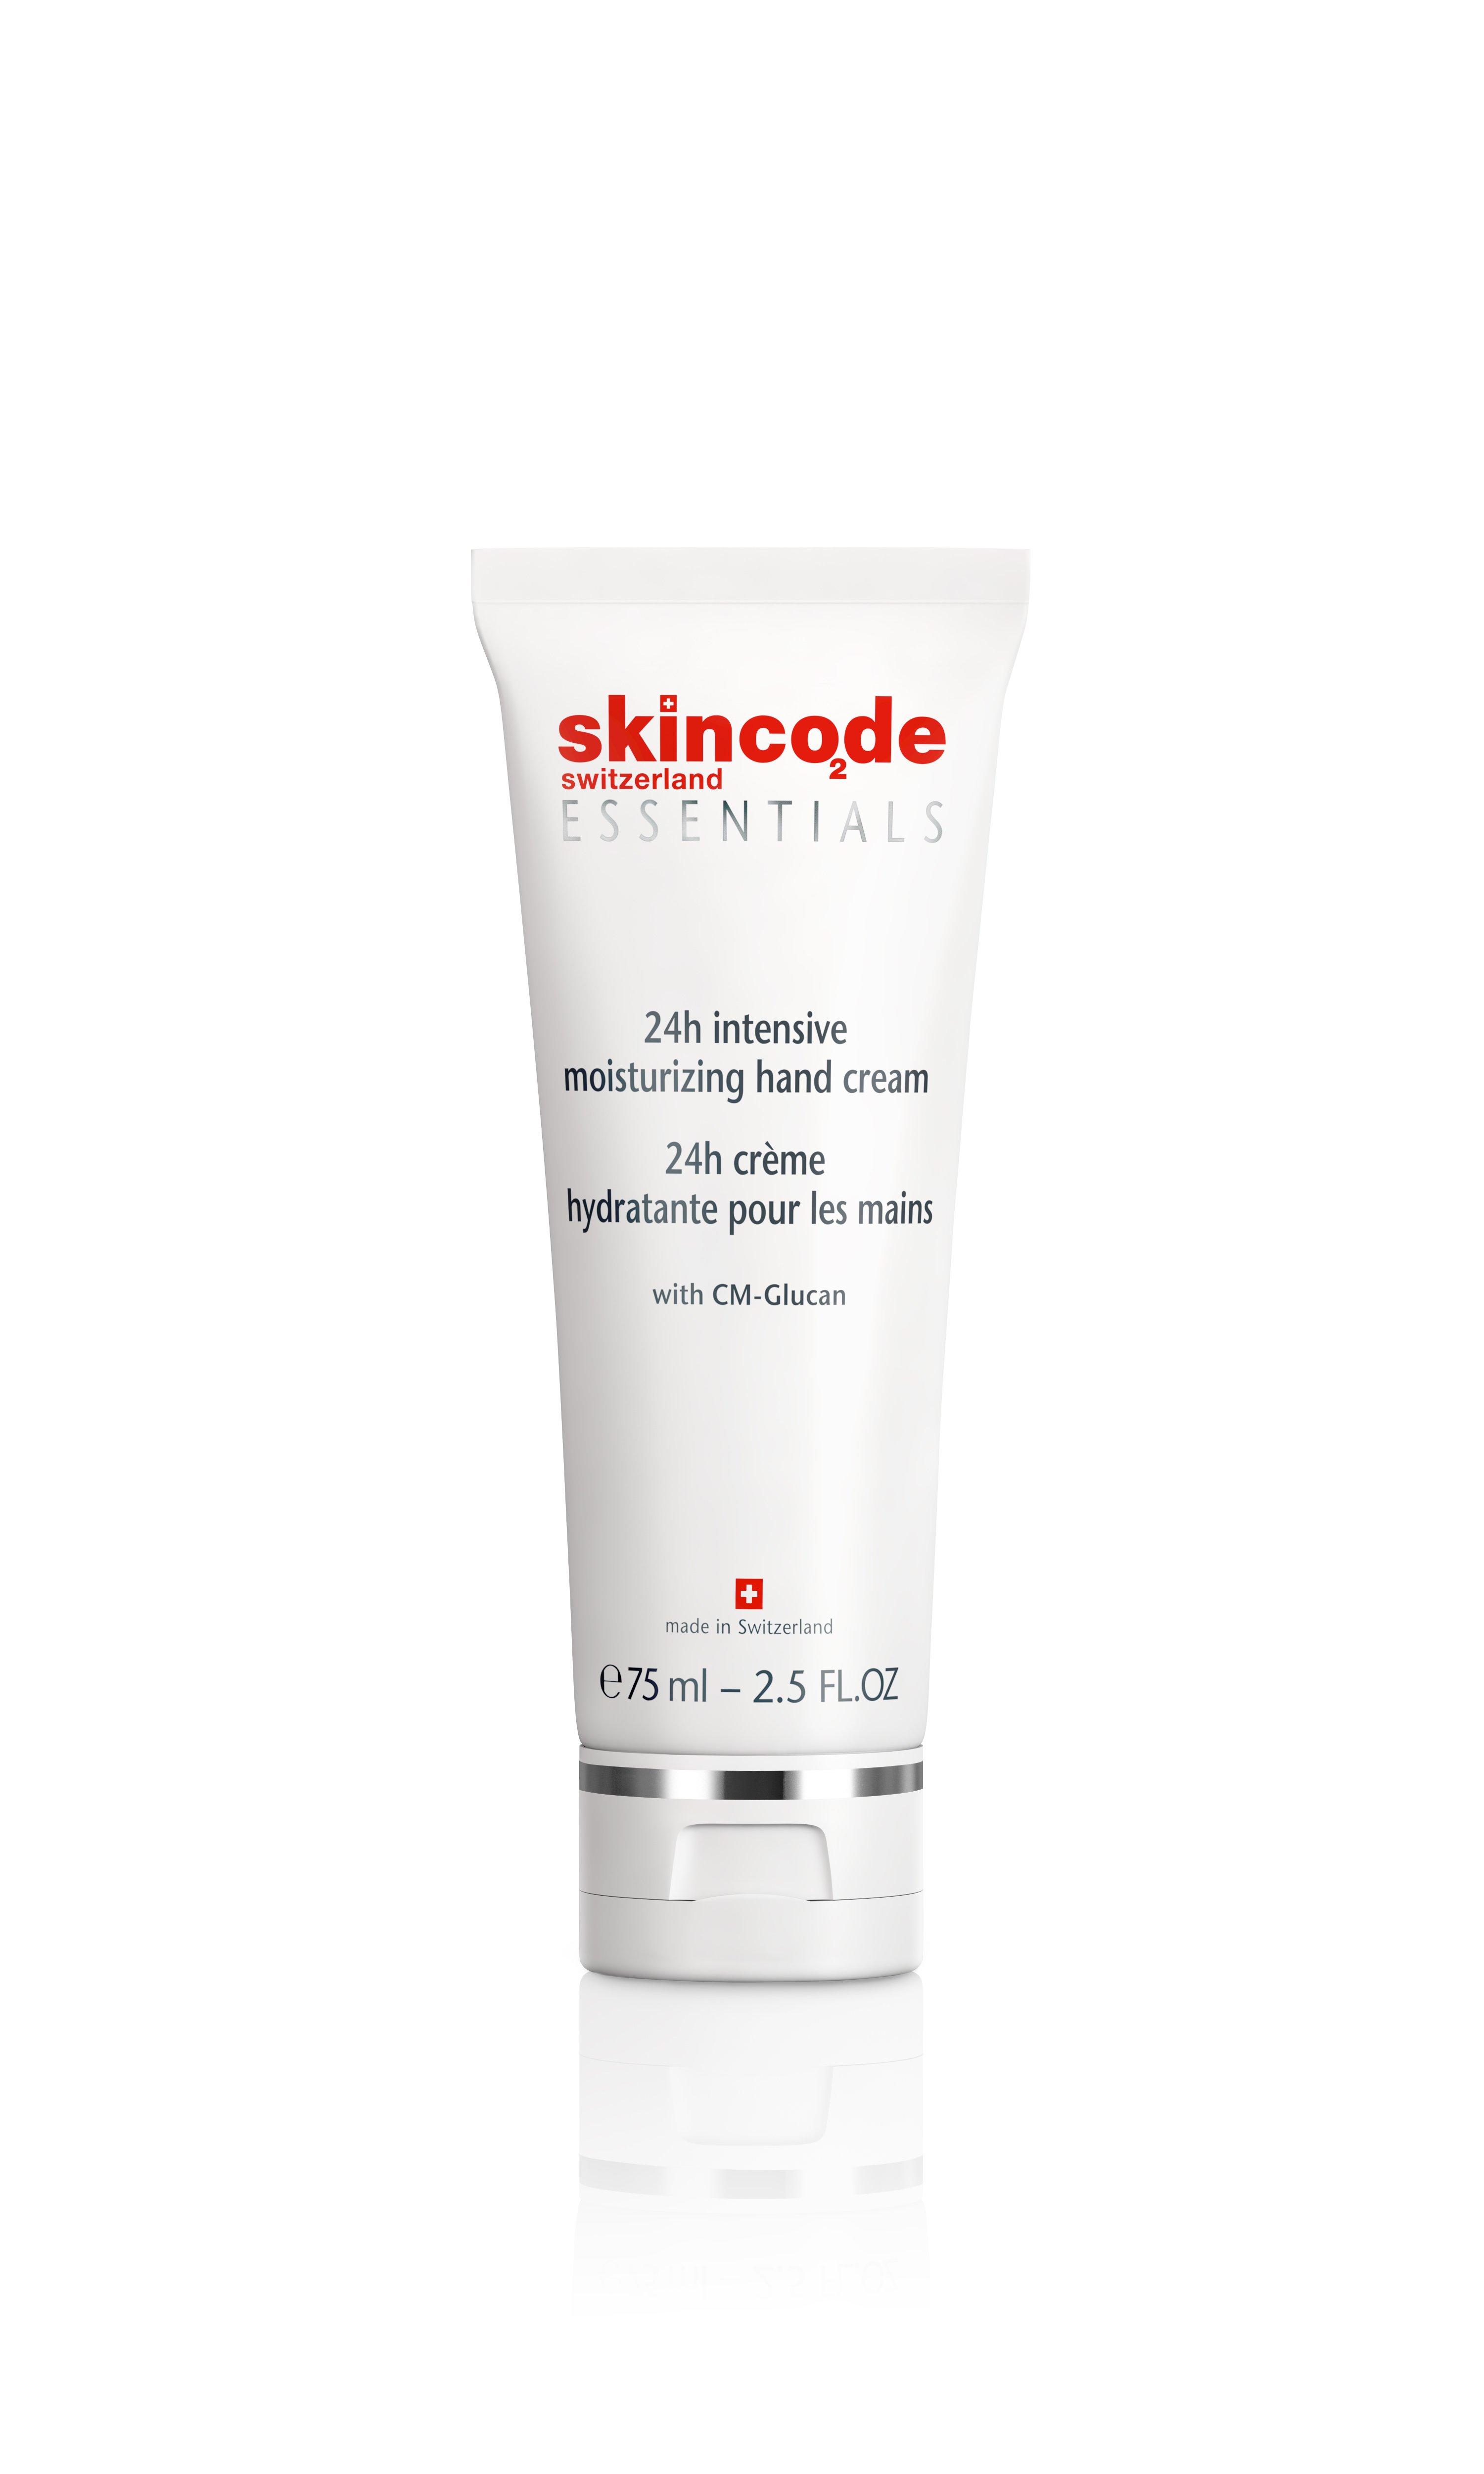 Image of skincode 24h intensive moisturizing hand cream - 75ml